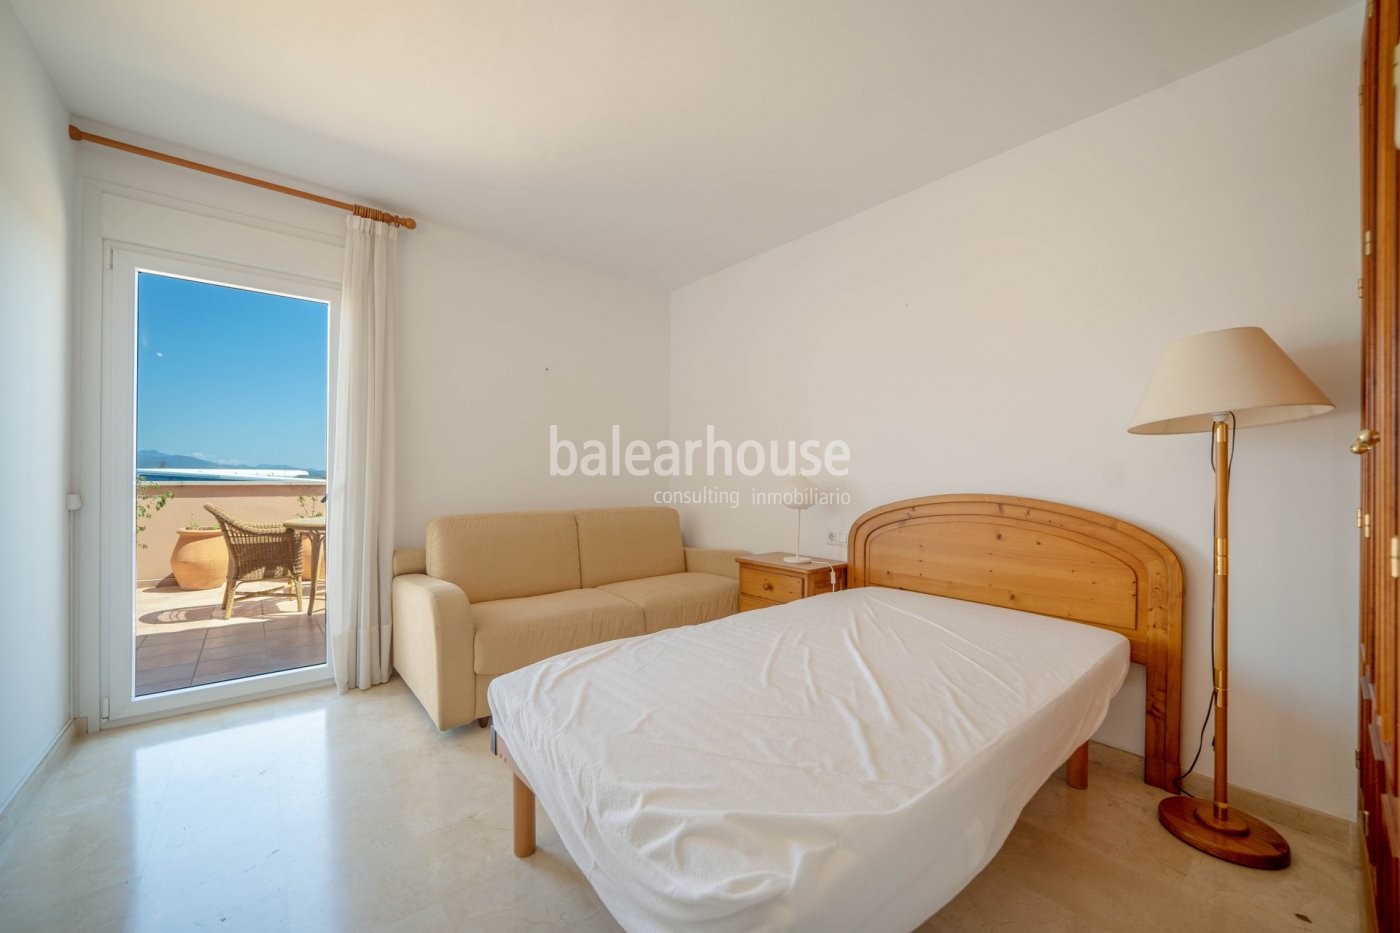 Großes Penthouse mit Terrassen, privatem Solarium und hoher Qualität in grüner Umgebung von Palma.